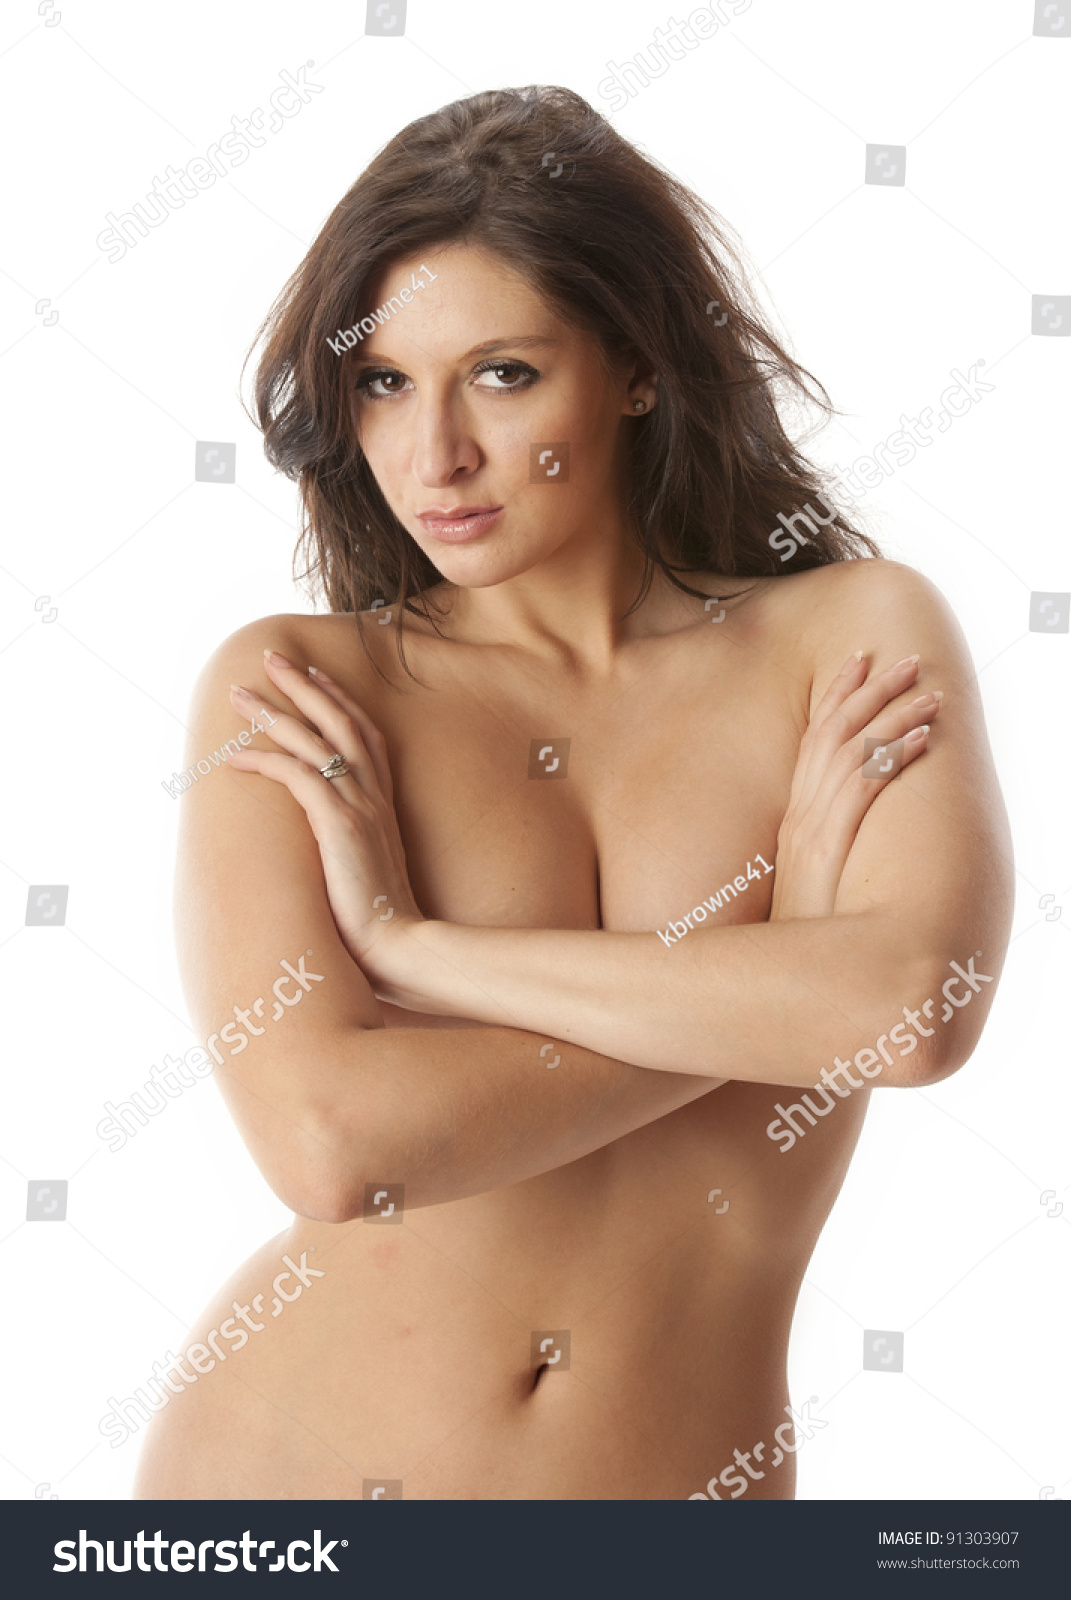 Beautiful nude woman